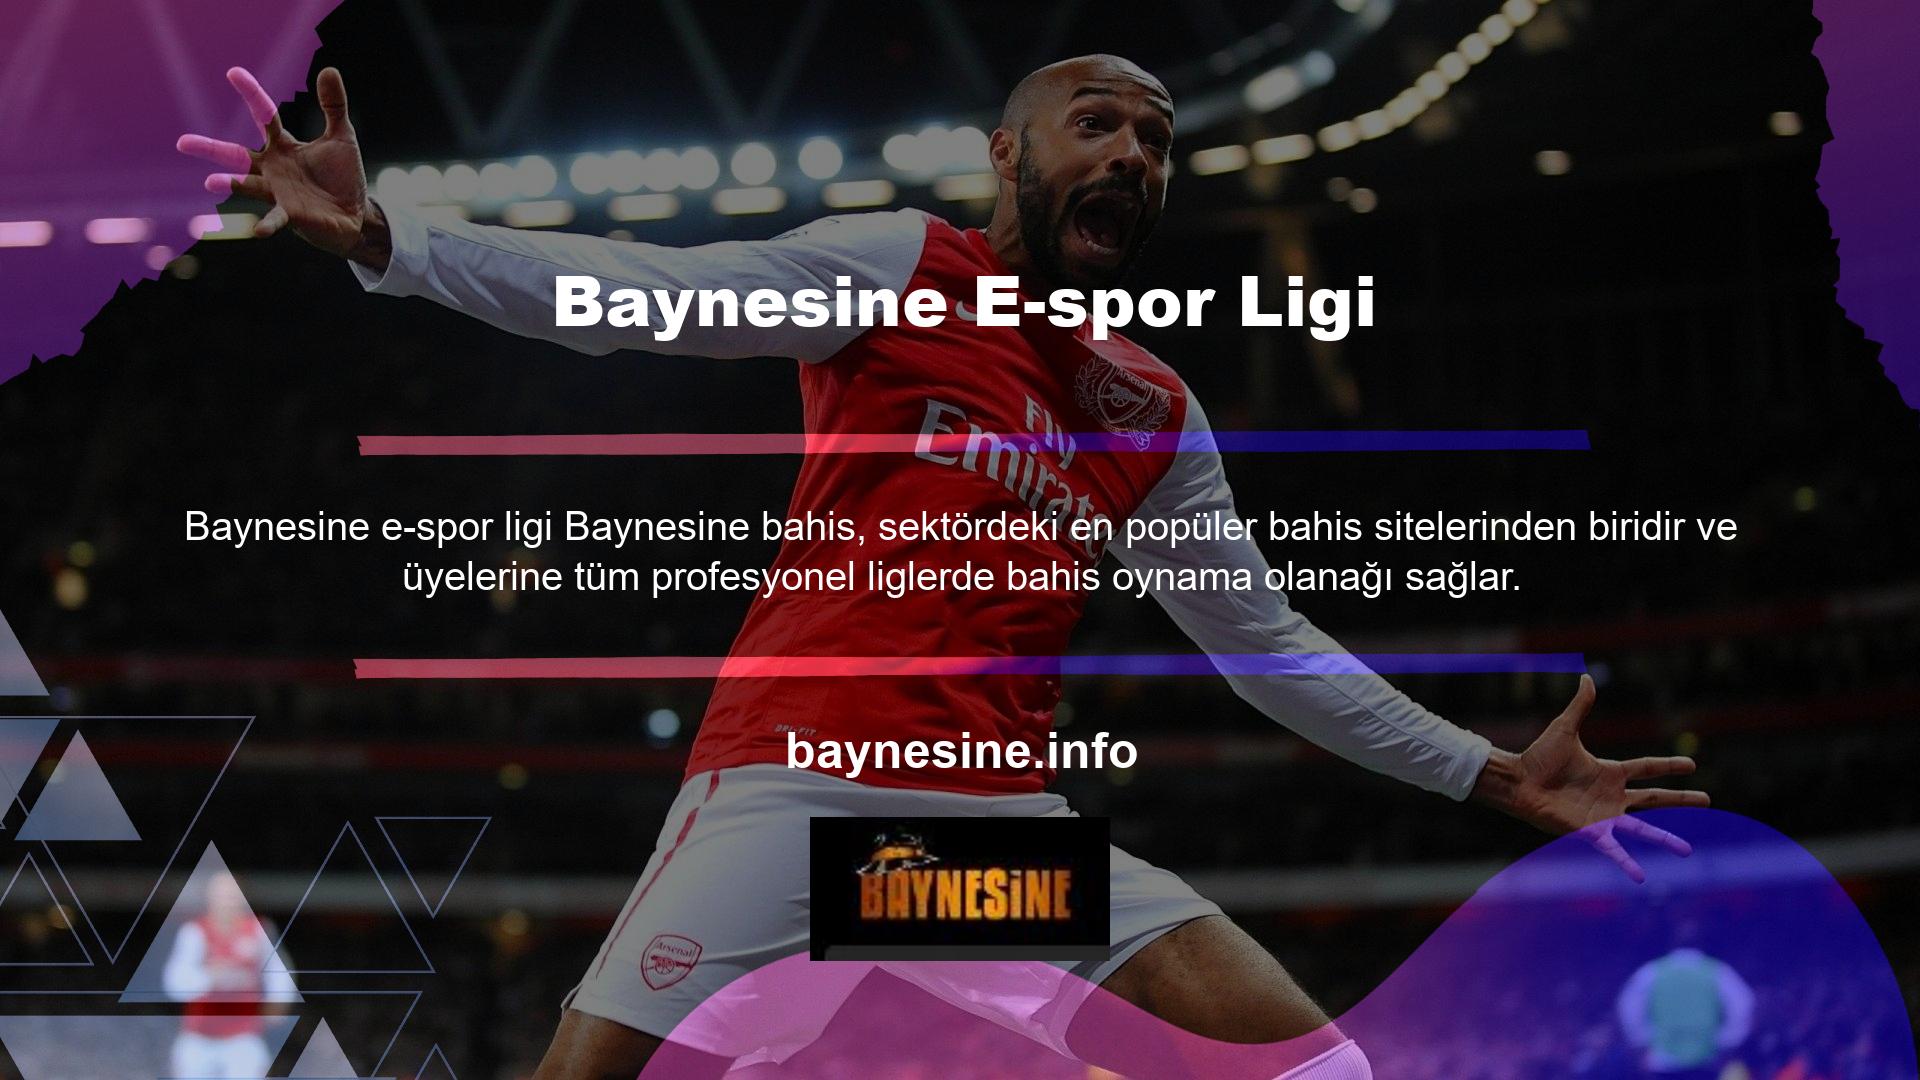 Bahis sitesi Baynesine, kullanıcılara spor bahisleri kategorisindeki E-spor liglerinin bir listesini sunar